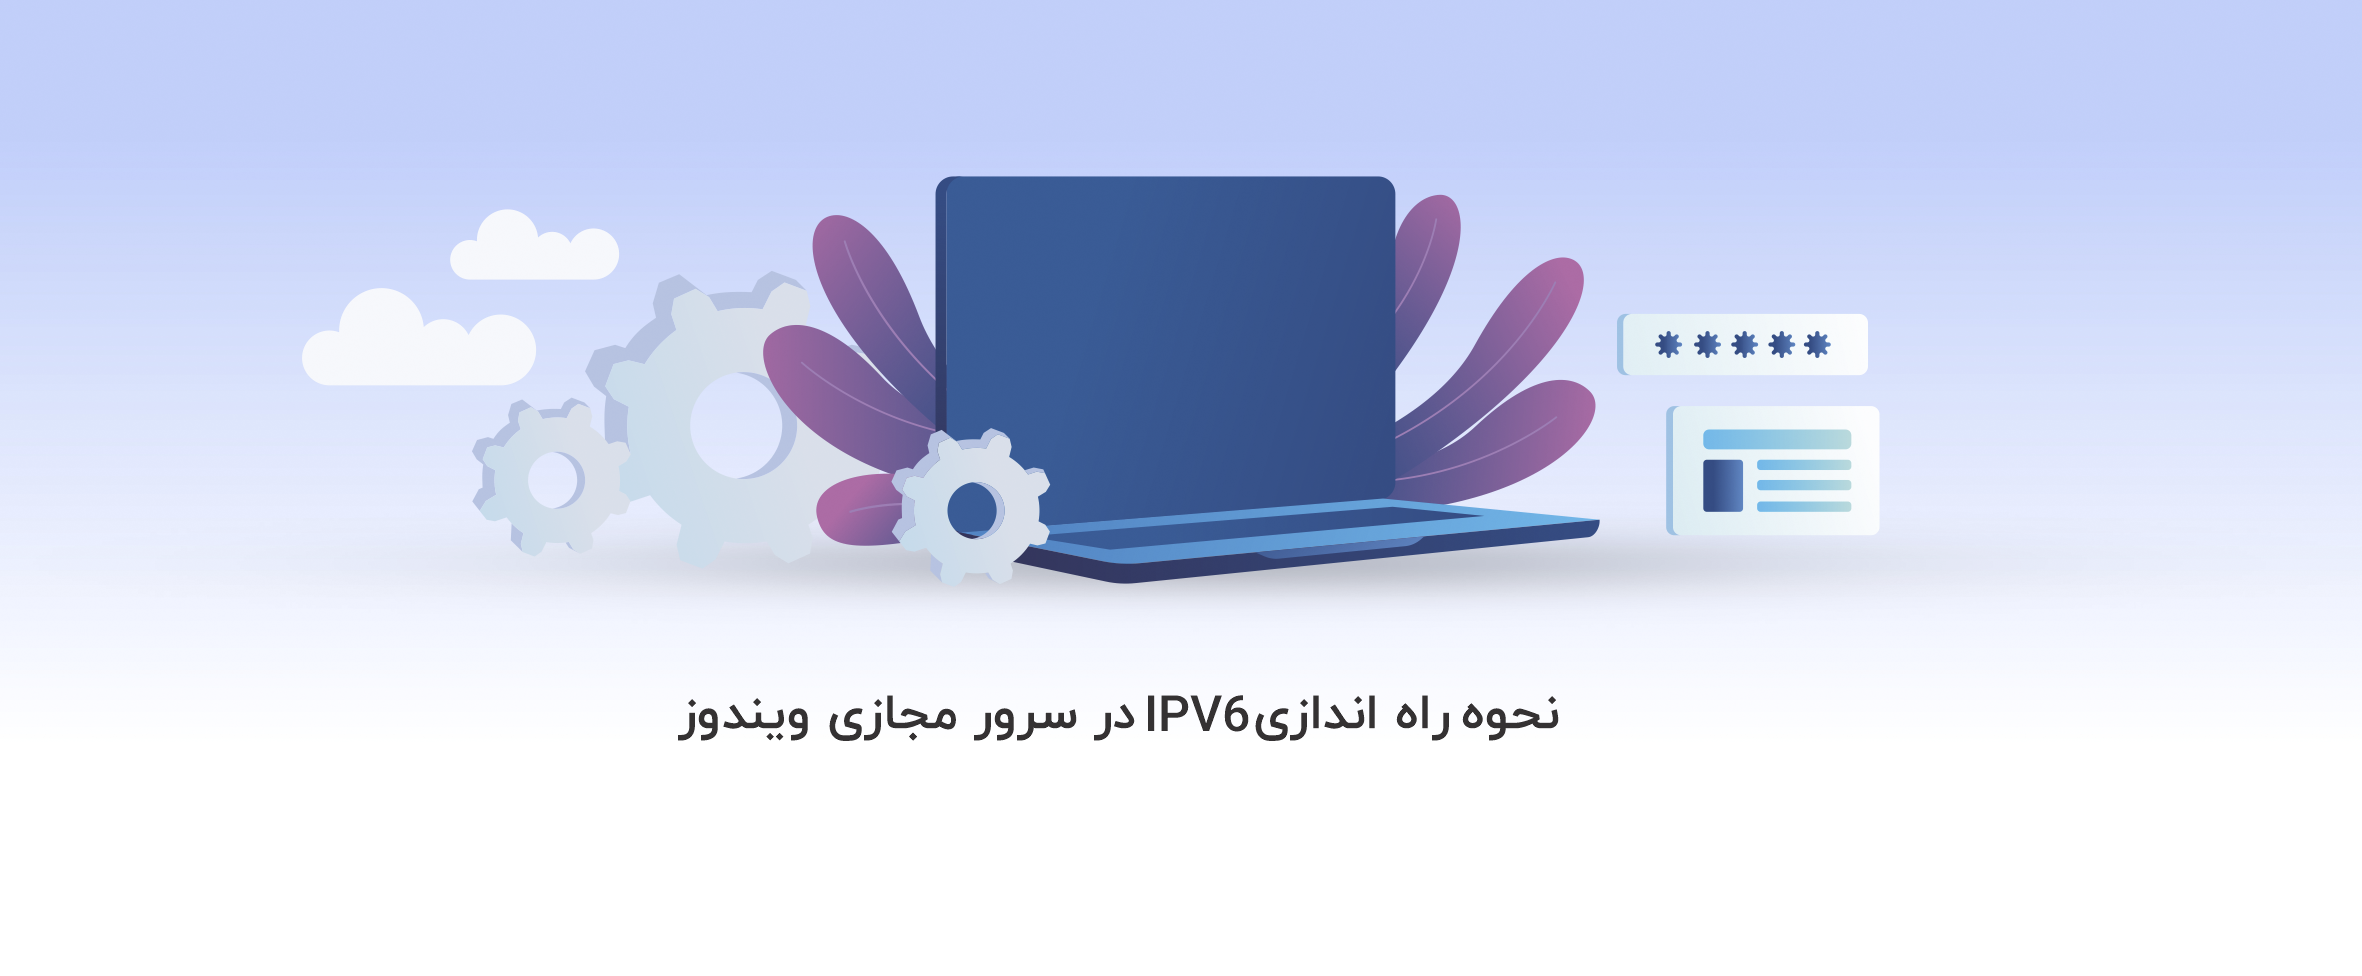 نحوه راه اندازی IPv6 در سرور مجازی ویندوز - آذرسیس